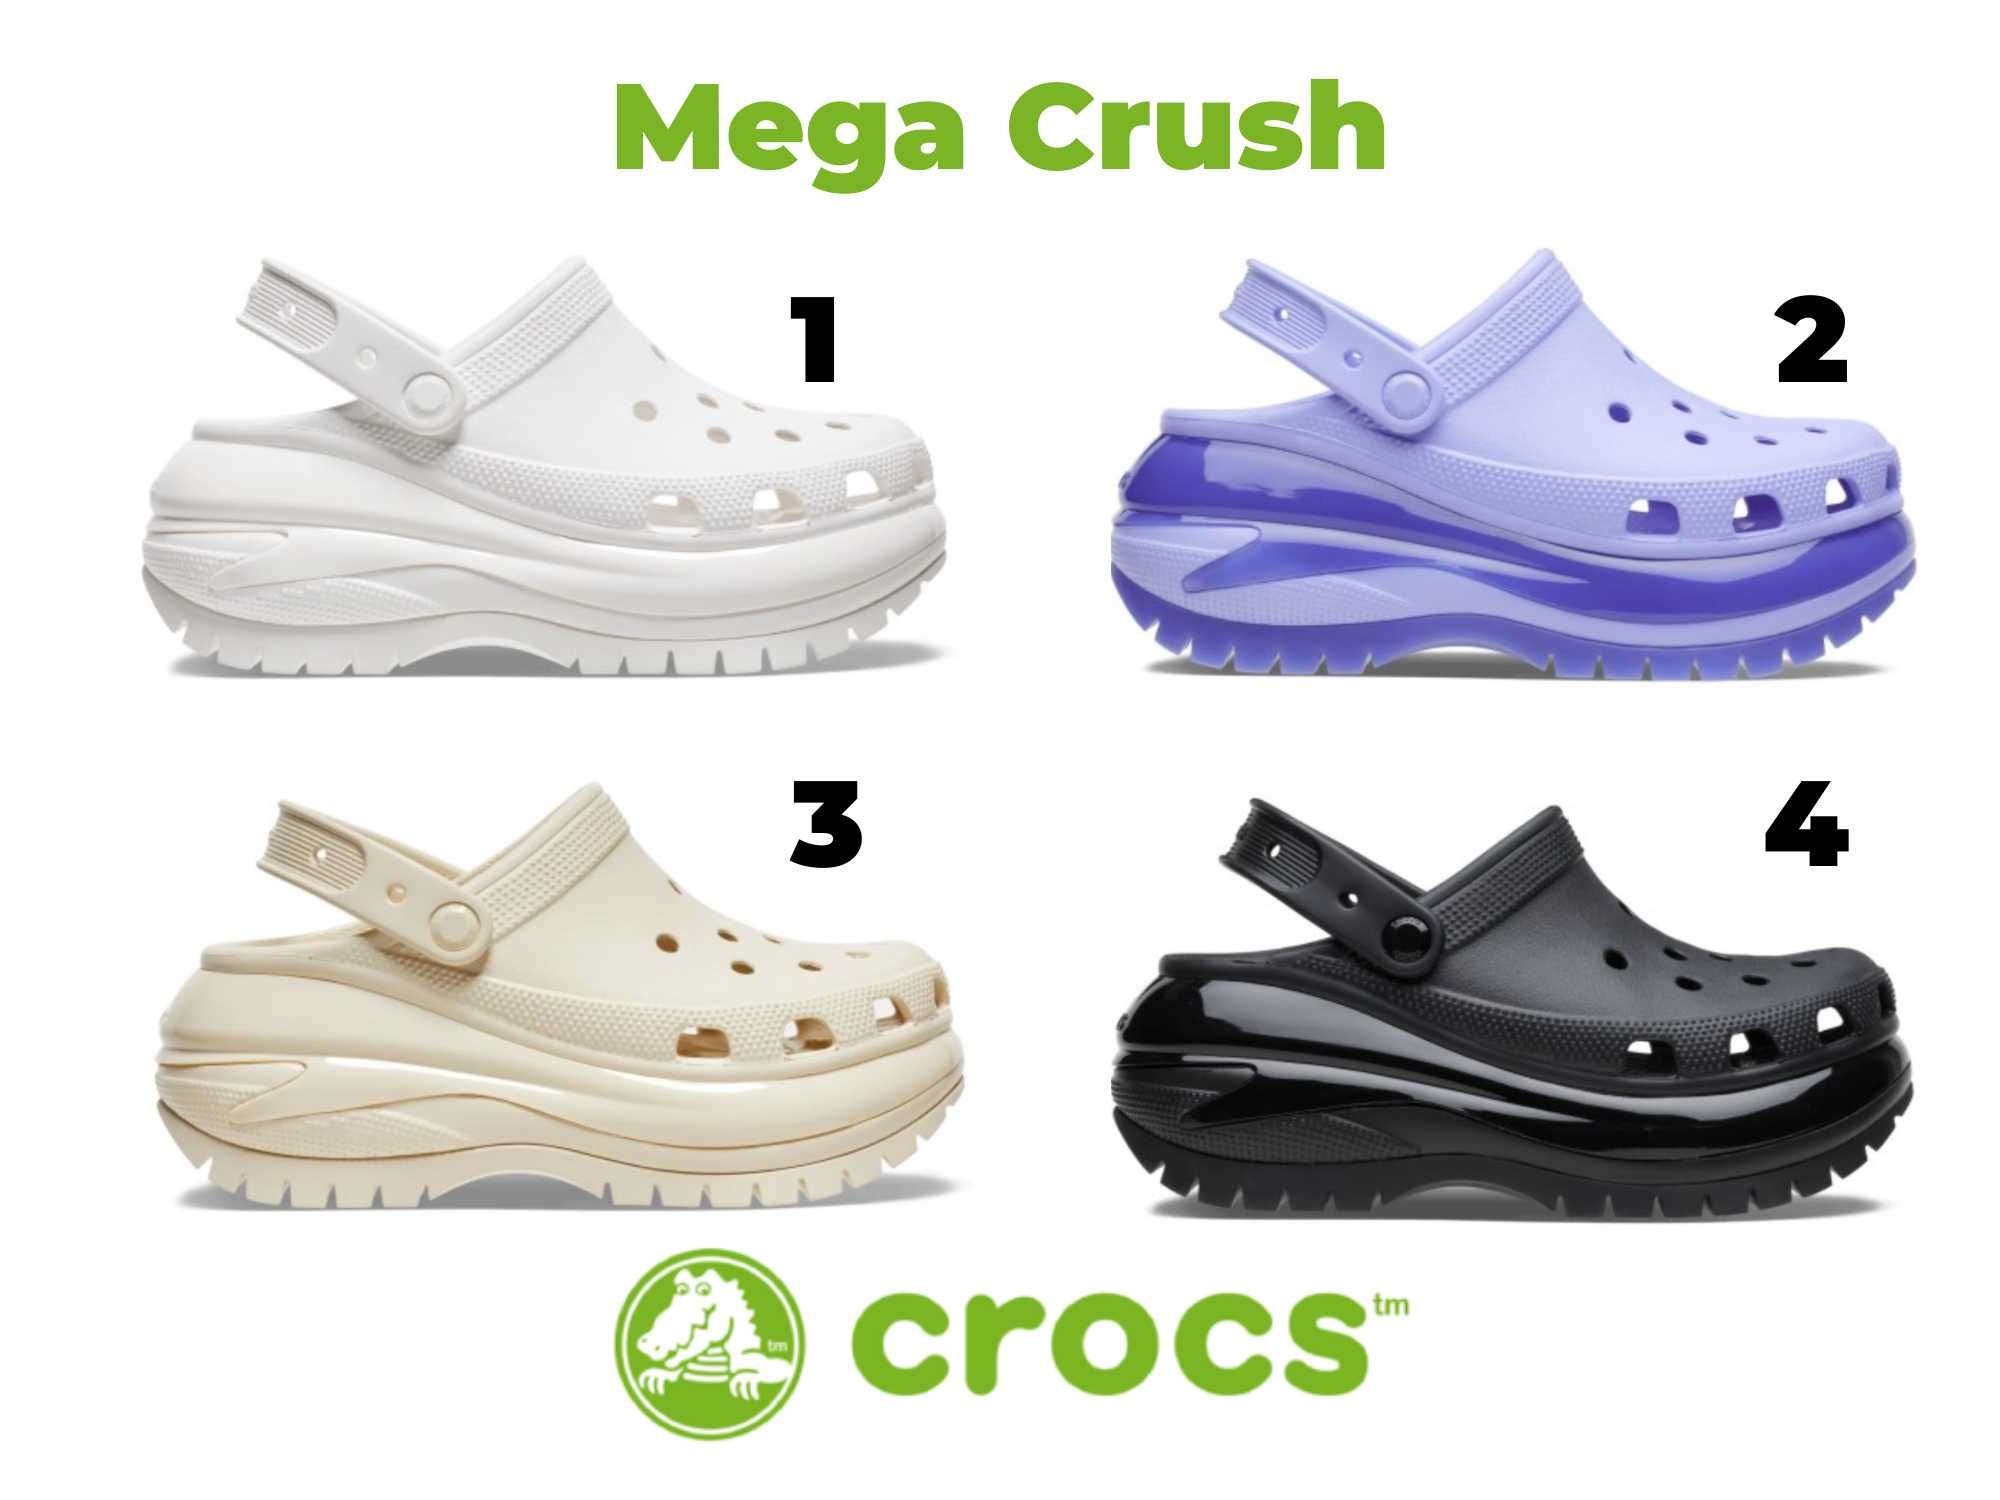 НОВИНКА Жіночі крокси на високій підошві Crocs MEGA Crush Clog!